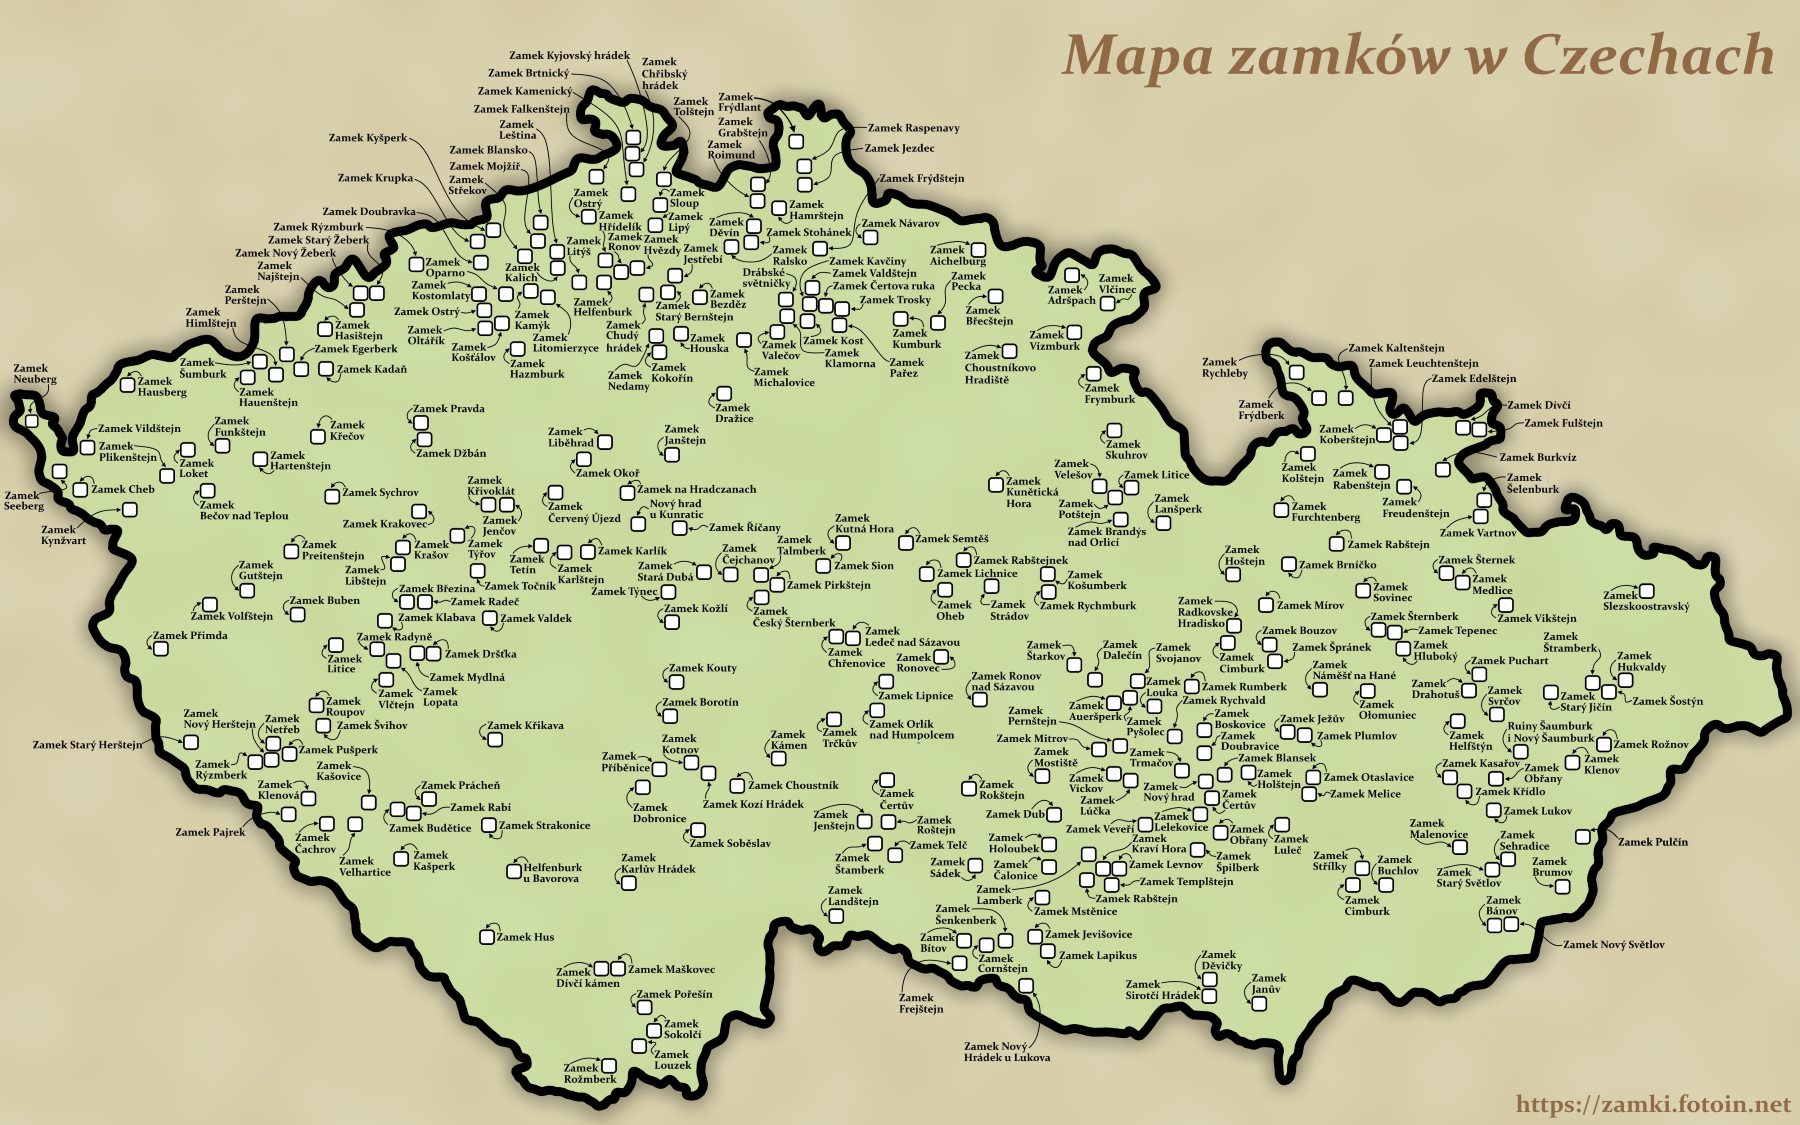 Mapa zamków w Czechach